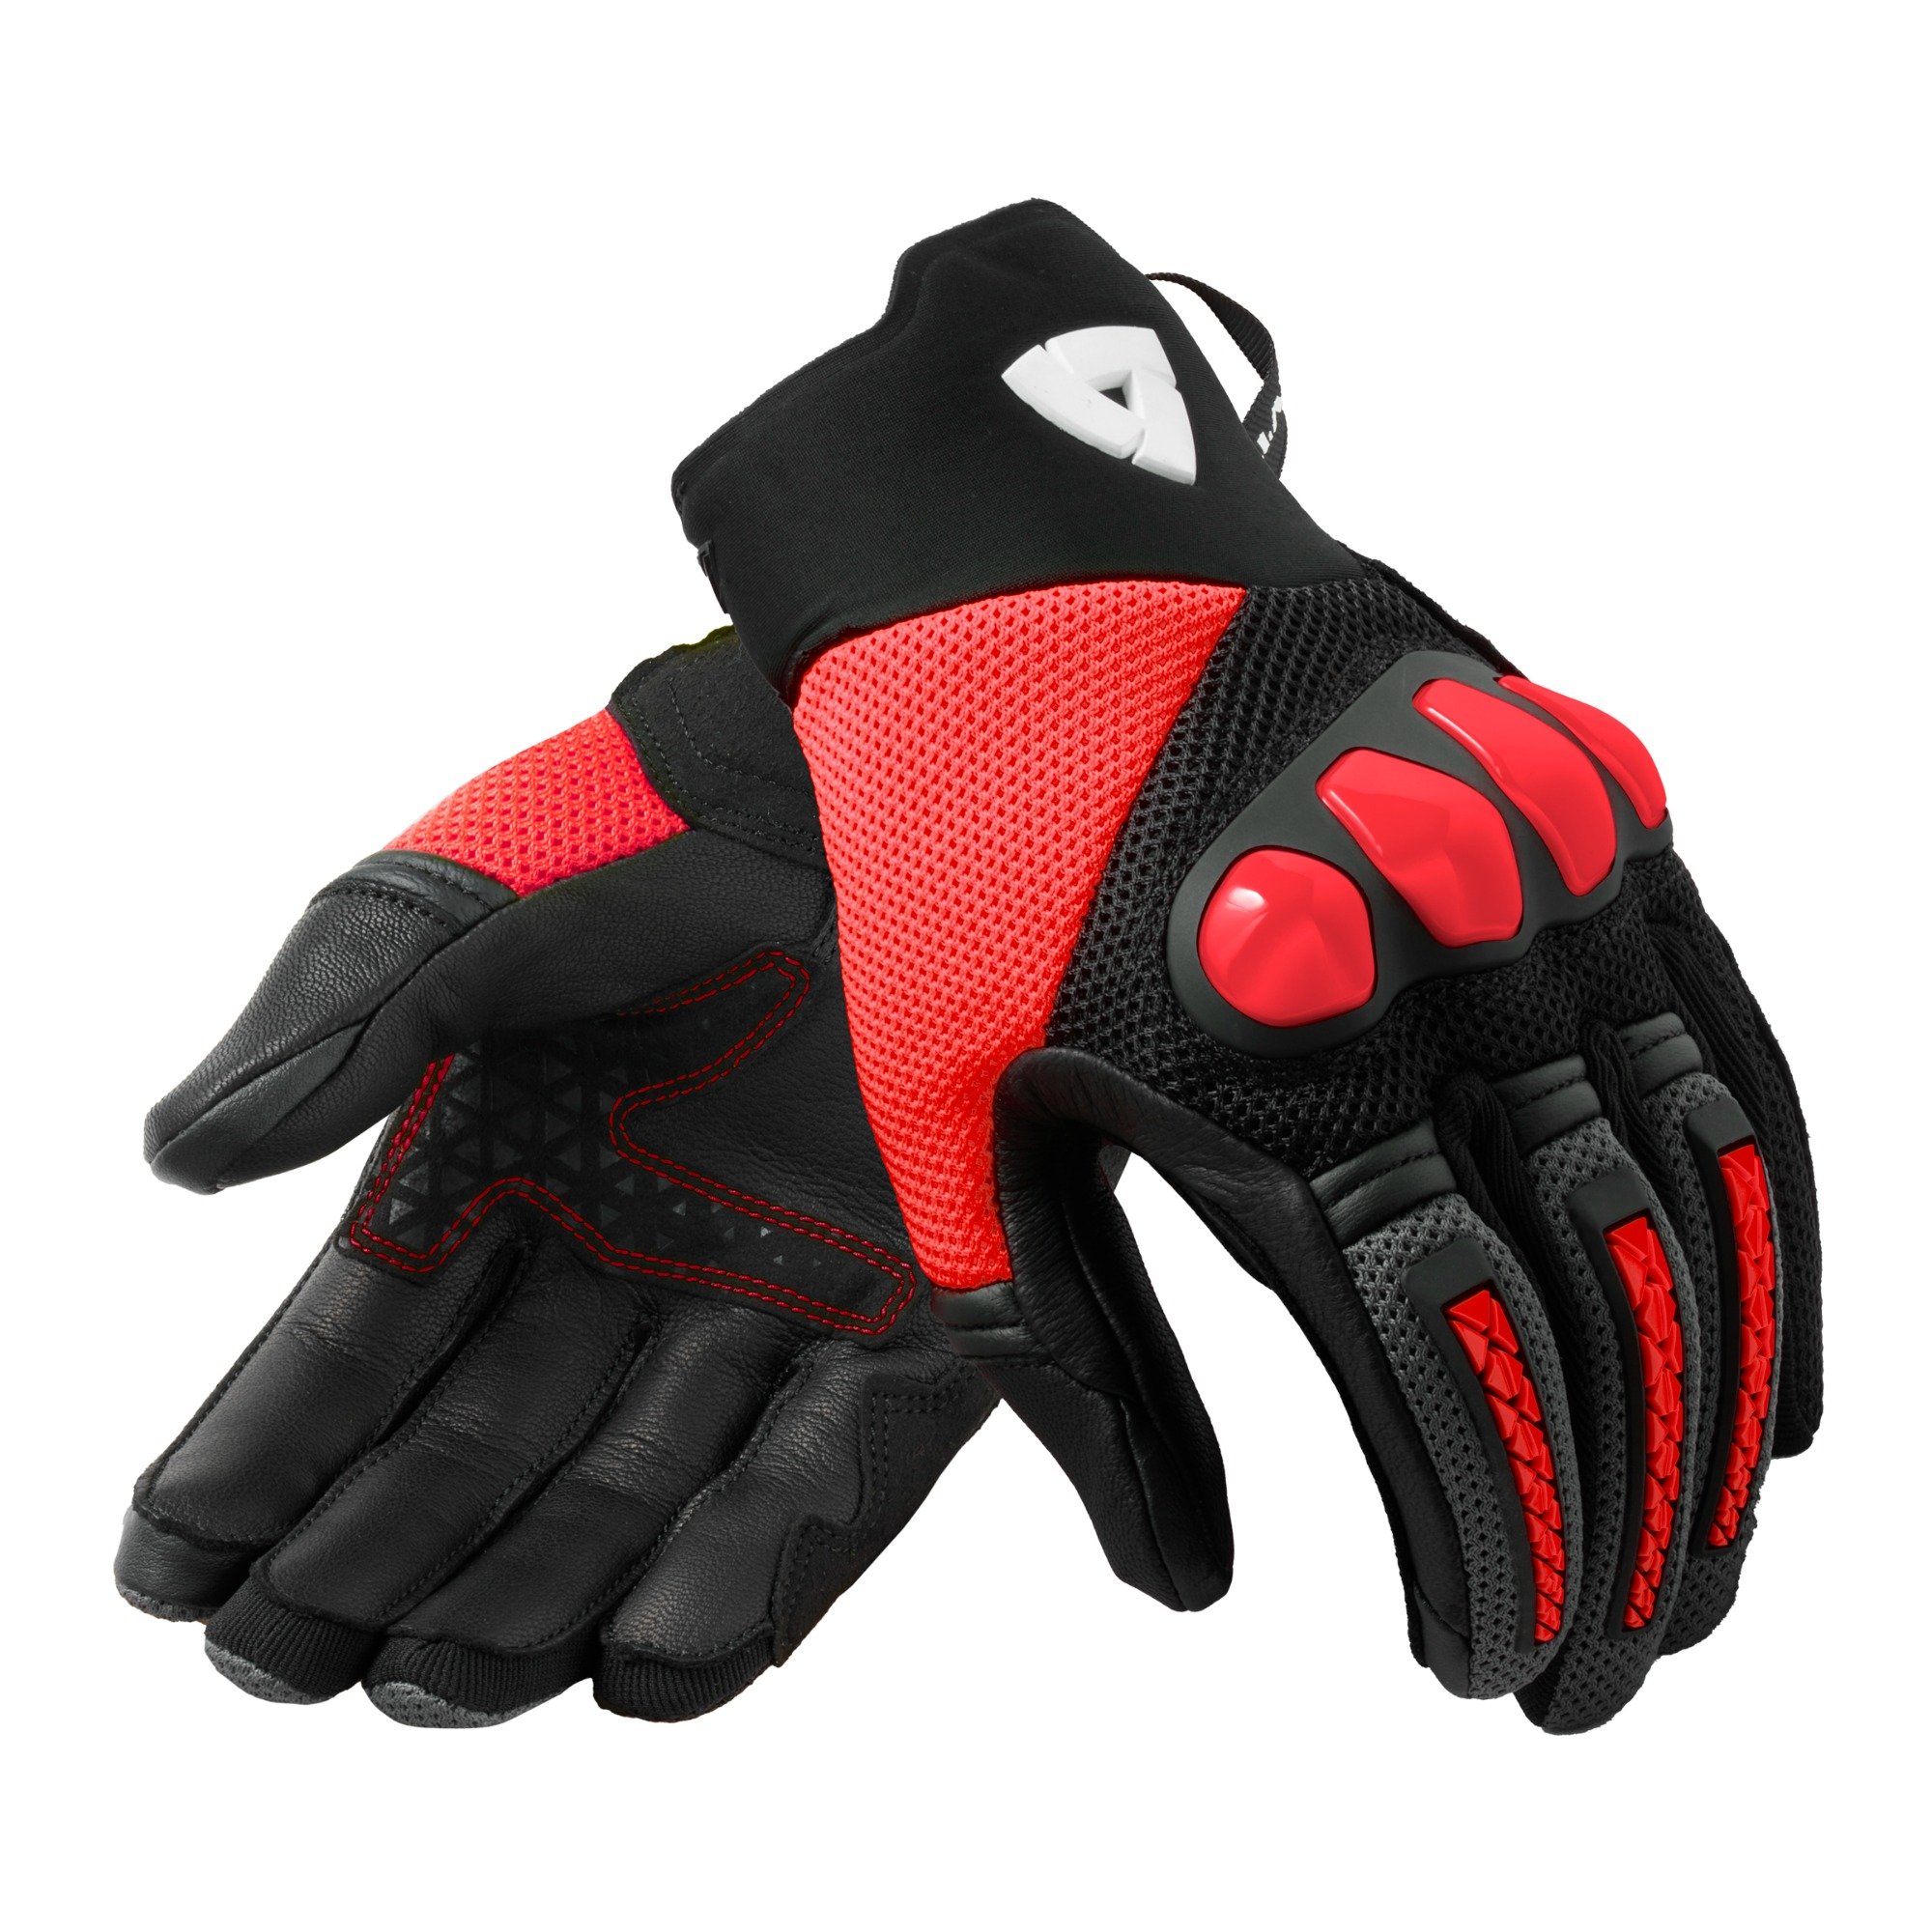 Image of REV'IT! Gloves Speedart Air Black Neon Red Size XL ID 8700001361026